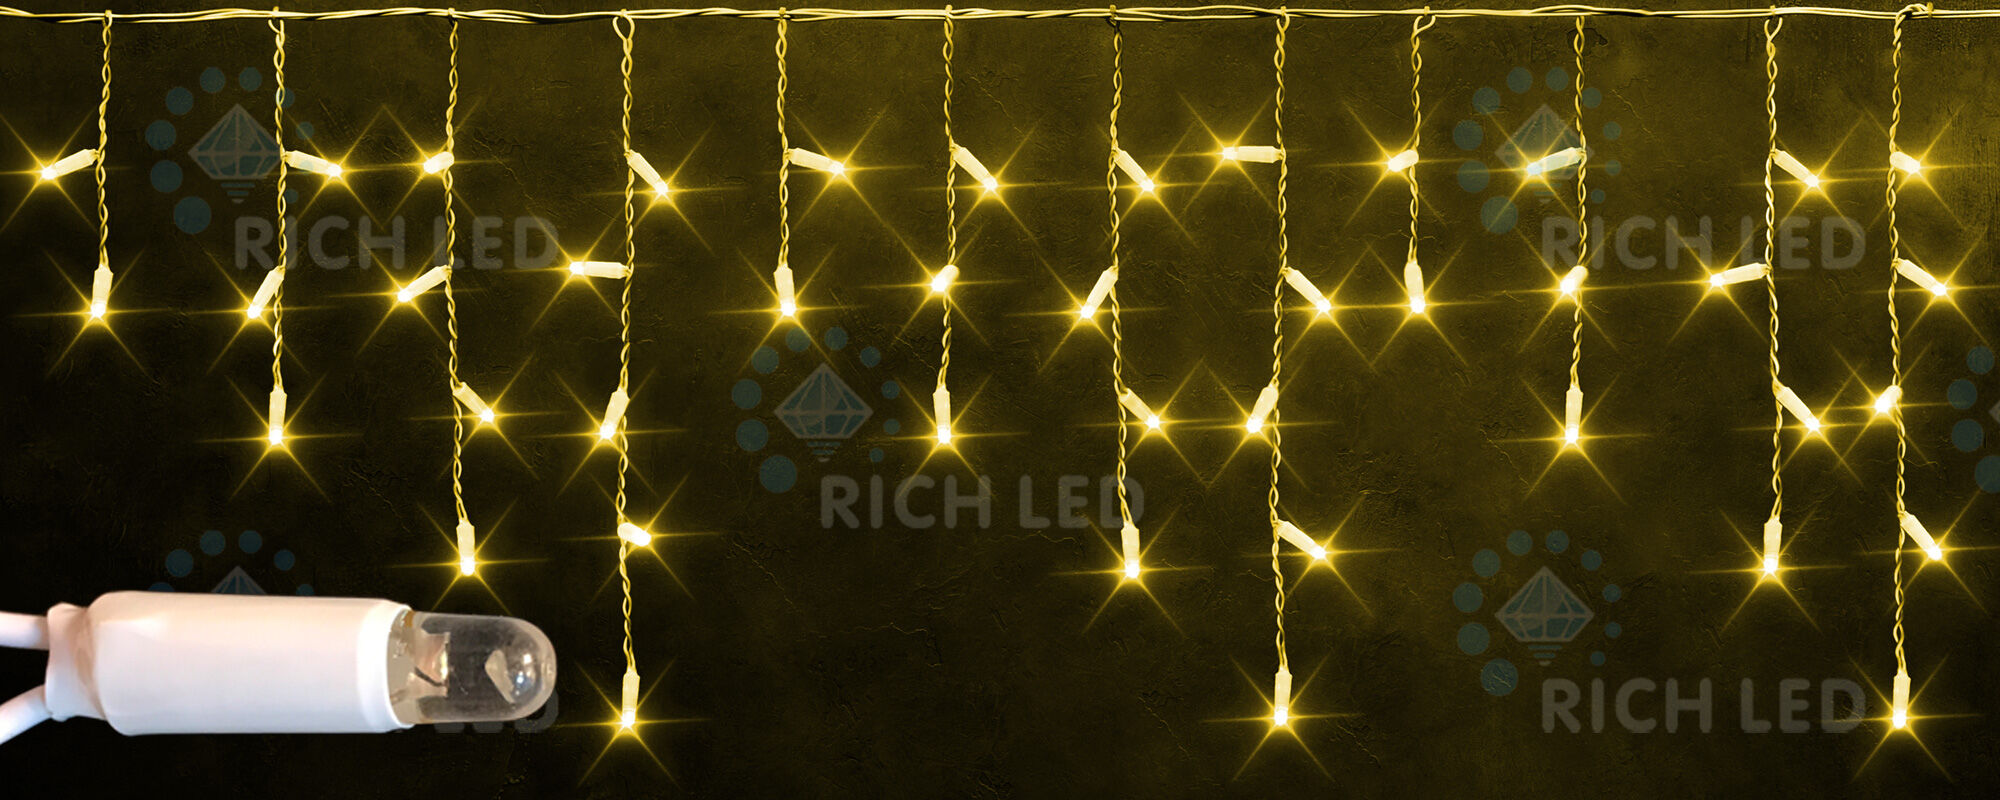 Светодиодная бахрома Rich LED, 3*0.5 м, влагозащитный колпачок, желтая, прозрачный провод, RICH LED